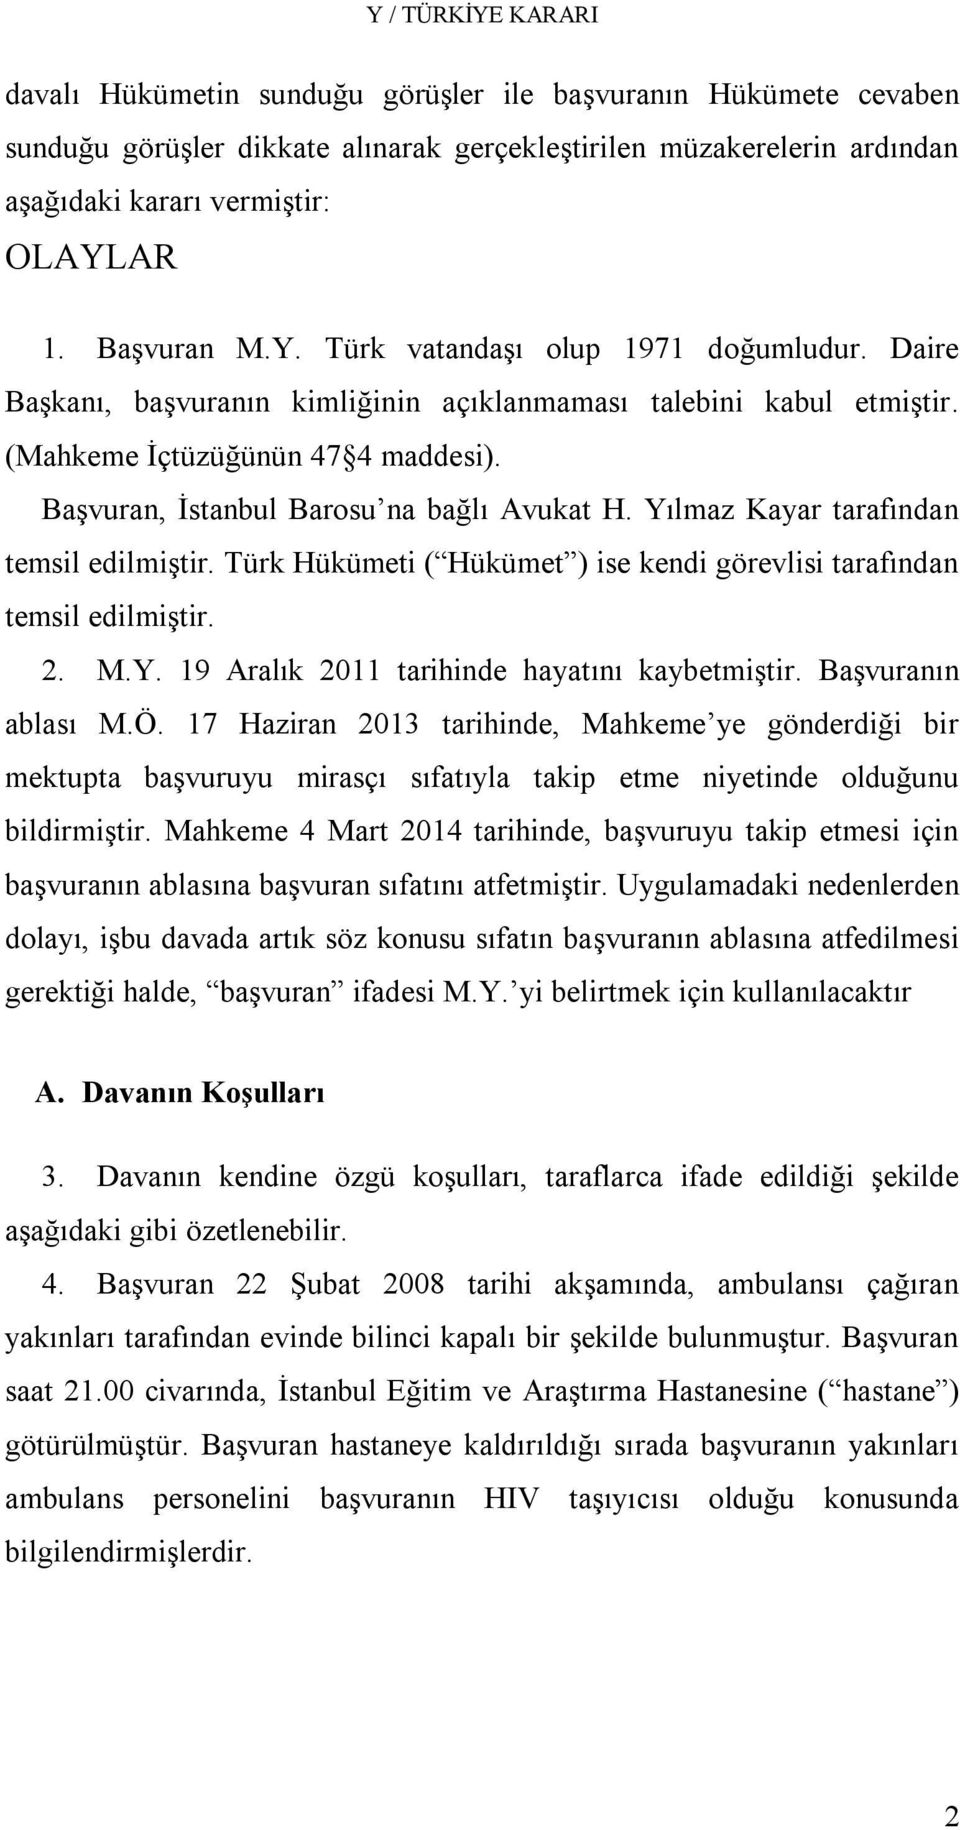 Başvuran, İstanbul Barosu na bağlı Avukat H. Yılmaz Kayar tarafından temsil edilmiştir. Türk Hükümeti ( Hükümet ) ise kendi görevlisi tarafından temsil edilmiştir. 2. M.Y. 19 Aralık 2011 tarihinde hayatını kaybetmiştir.